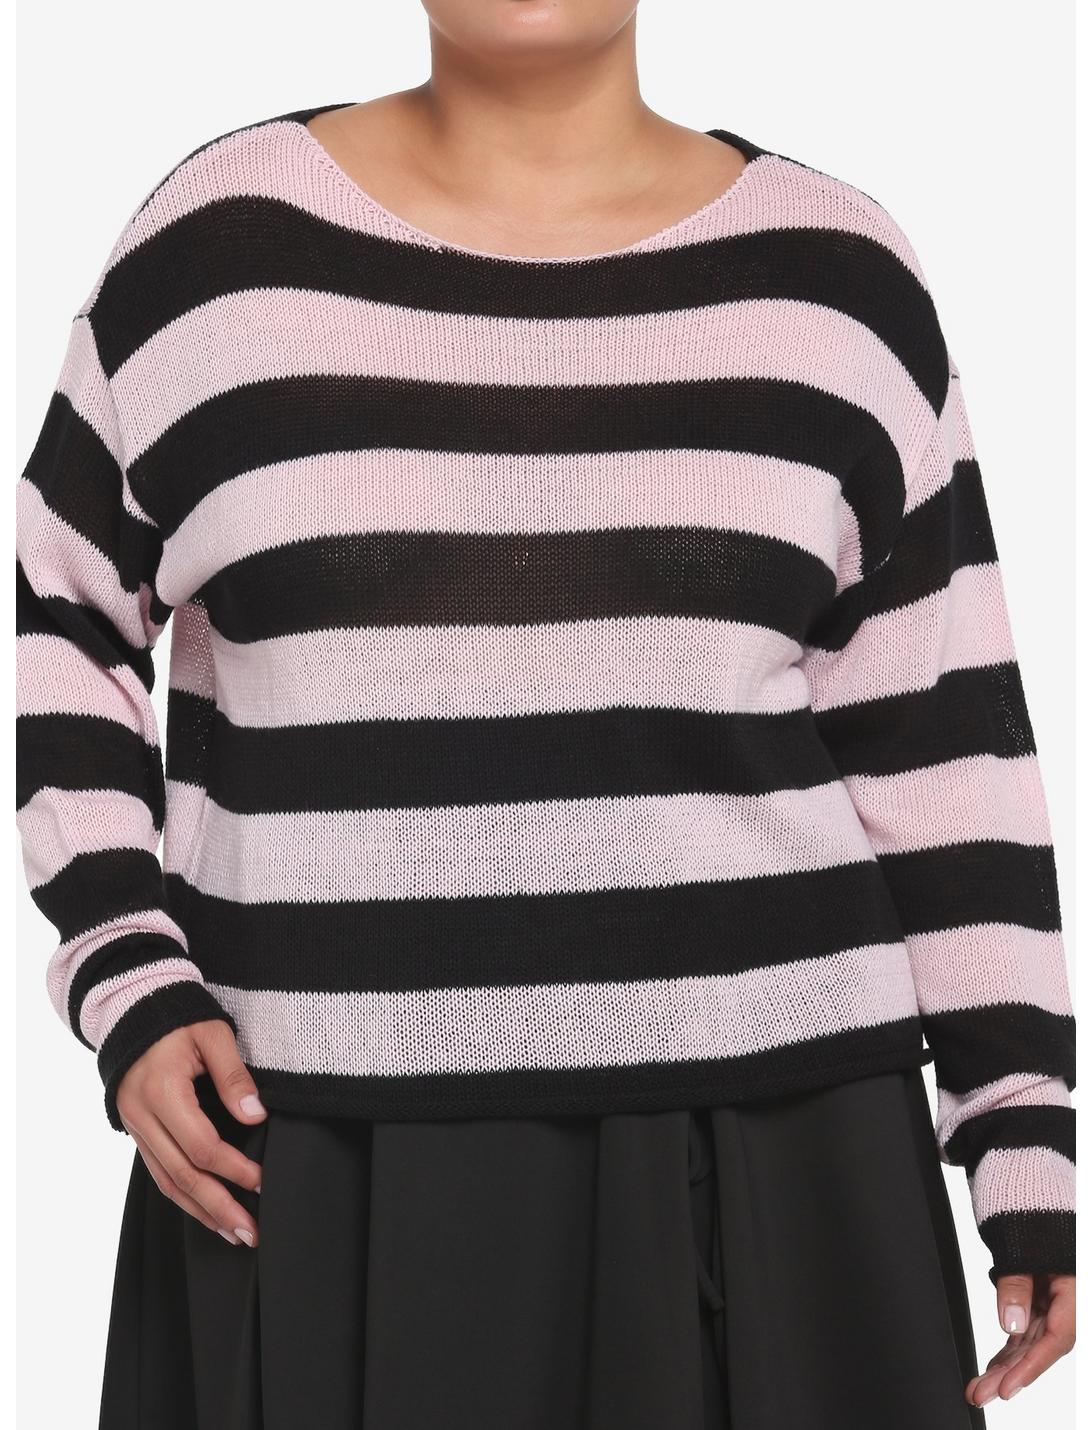 Black & Pink Stripe Girls Crop Sweater Plus Size, PINK, hi-res